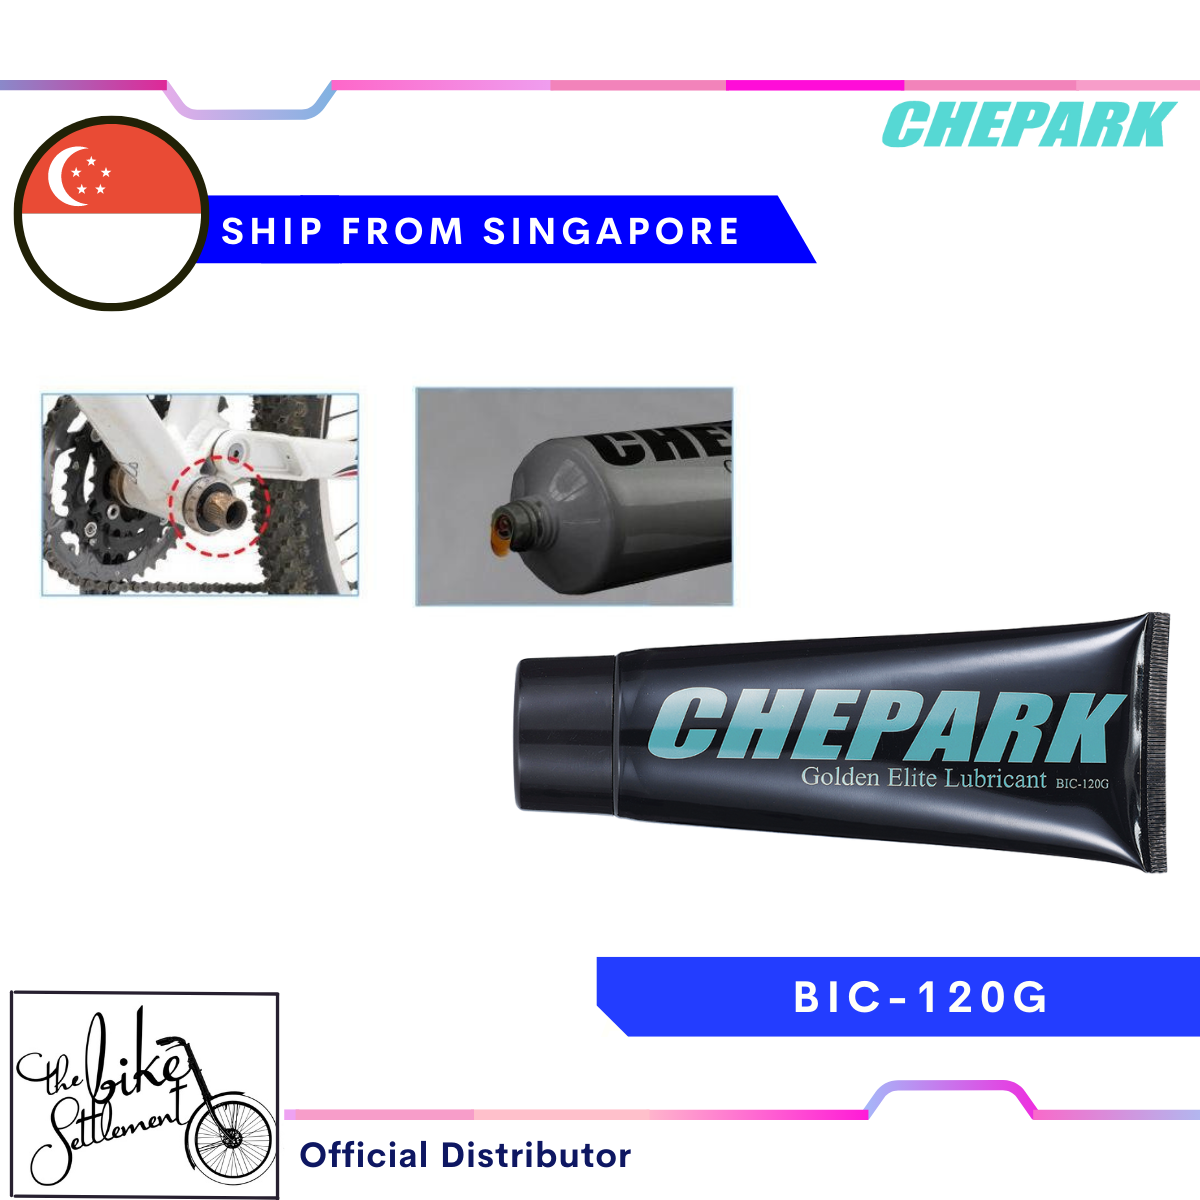 Buy Chepark Other Bike parts Online